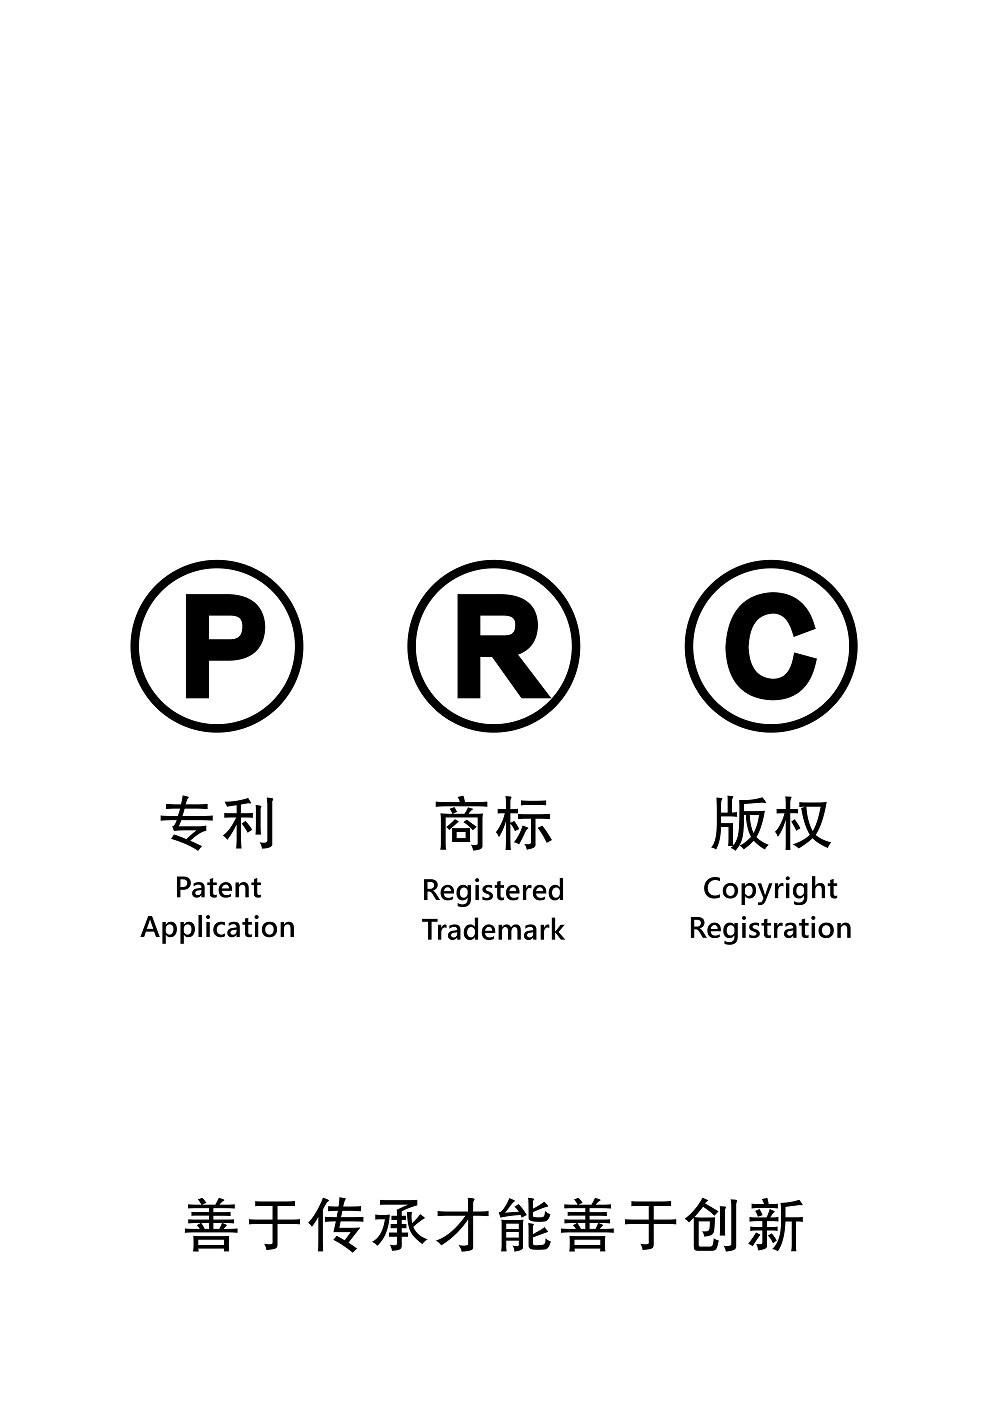 设计理念：PRC是People's Republic of China(中华人民共和国)的英文缩写，2017年10月1日正式施行《中华人民共和国民法通则》明文规定民事主体享有知识产权，国家拥有知识产权得到法律认可。知识产权主要包括专利、商标和版权三方面内容，引导全国人民为国家而创新的新时代风尚。

设计目的：为了广泛传播知识产权的基本类型，让人们明确国家的知识产权战略是由专利、商标和版权构成。黑白颜色对比强烈突出主题，简洁明了，通俗易懂，便于宣传。


定位：内容简洁，利于全国性的宣传推广。更好的塑造新的国家形象，树立文化自信。在新时代中国特色社会主义发展中，体现主张尊重知识，重视知识产权，尊重人才的一贯作风。